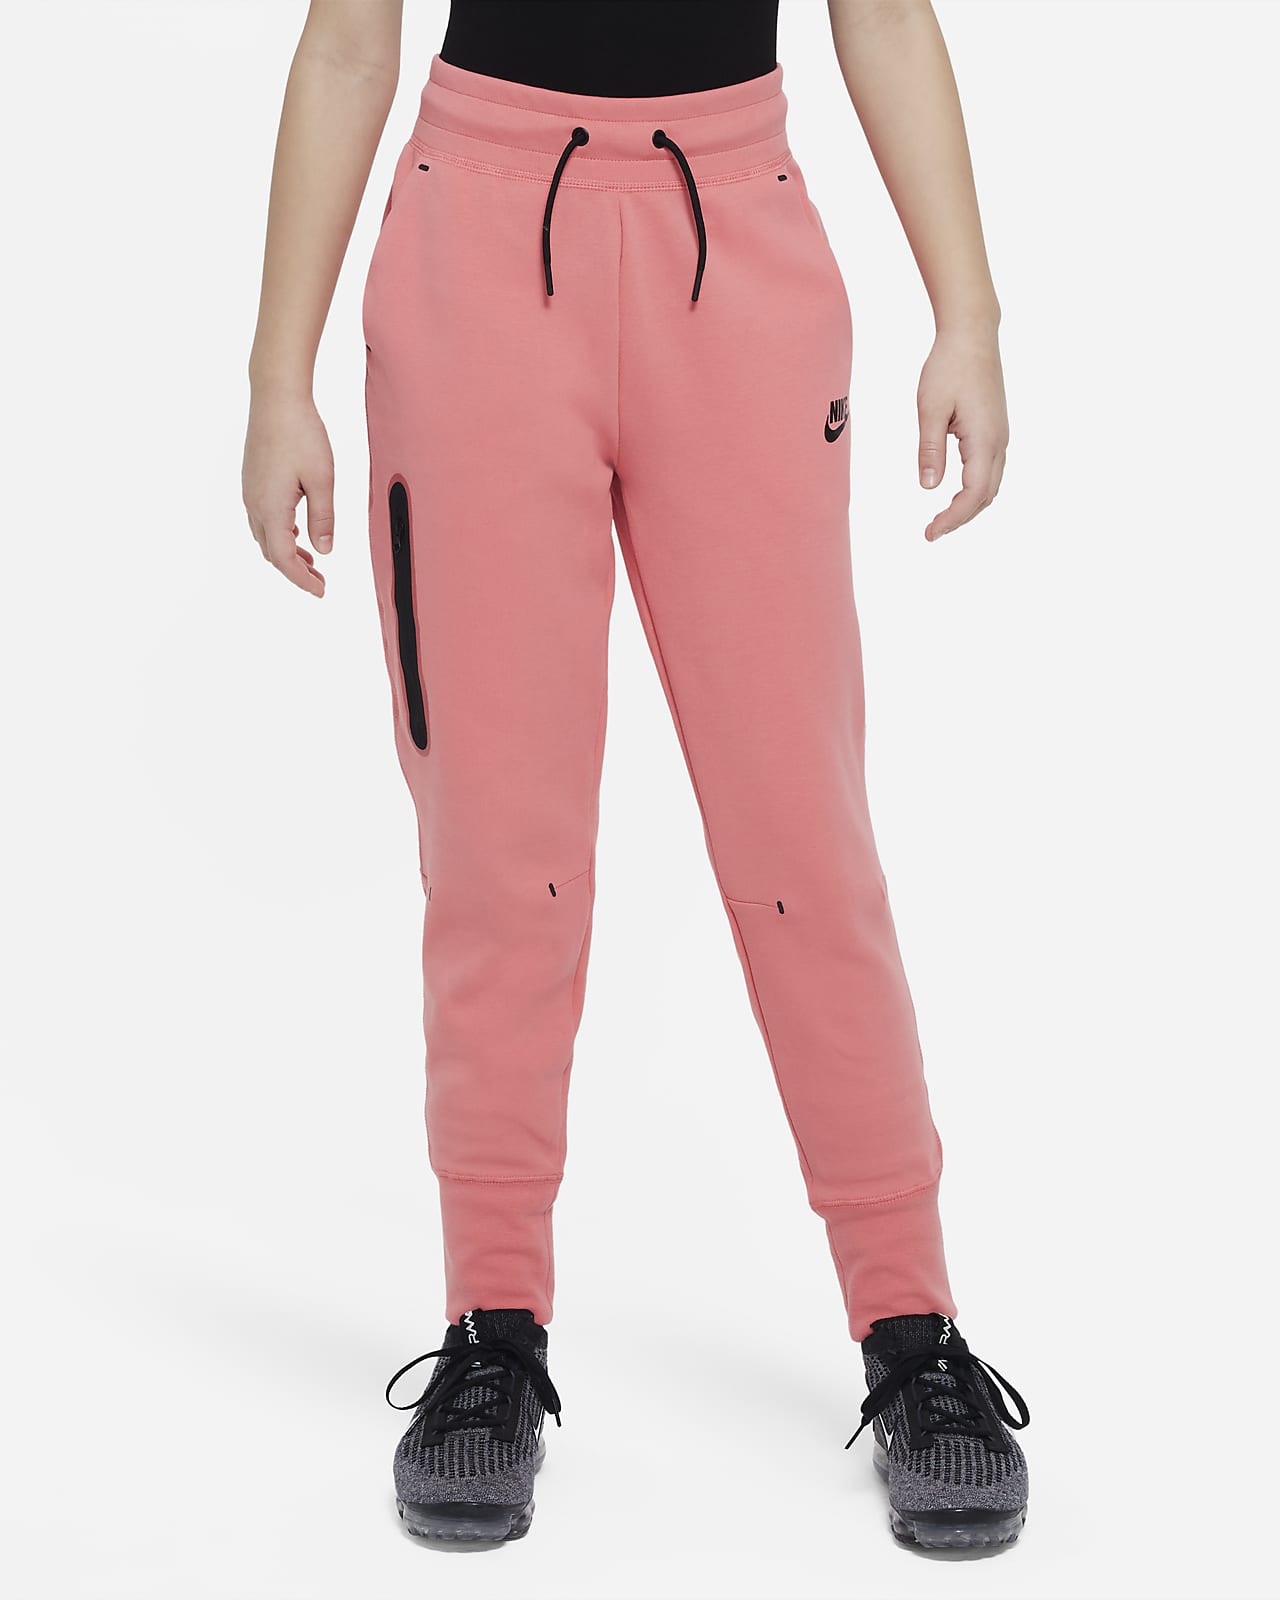 Maak een naam brandwonden Monarchie Nike Sportswear Tech Fleece Meisjesbroek. Nike NL